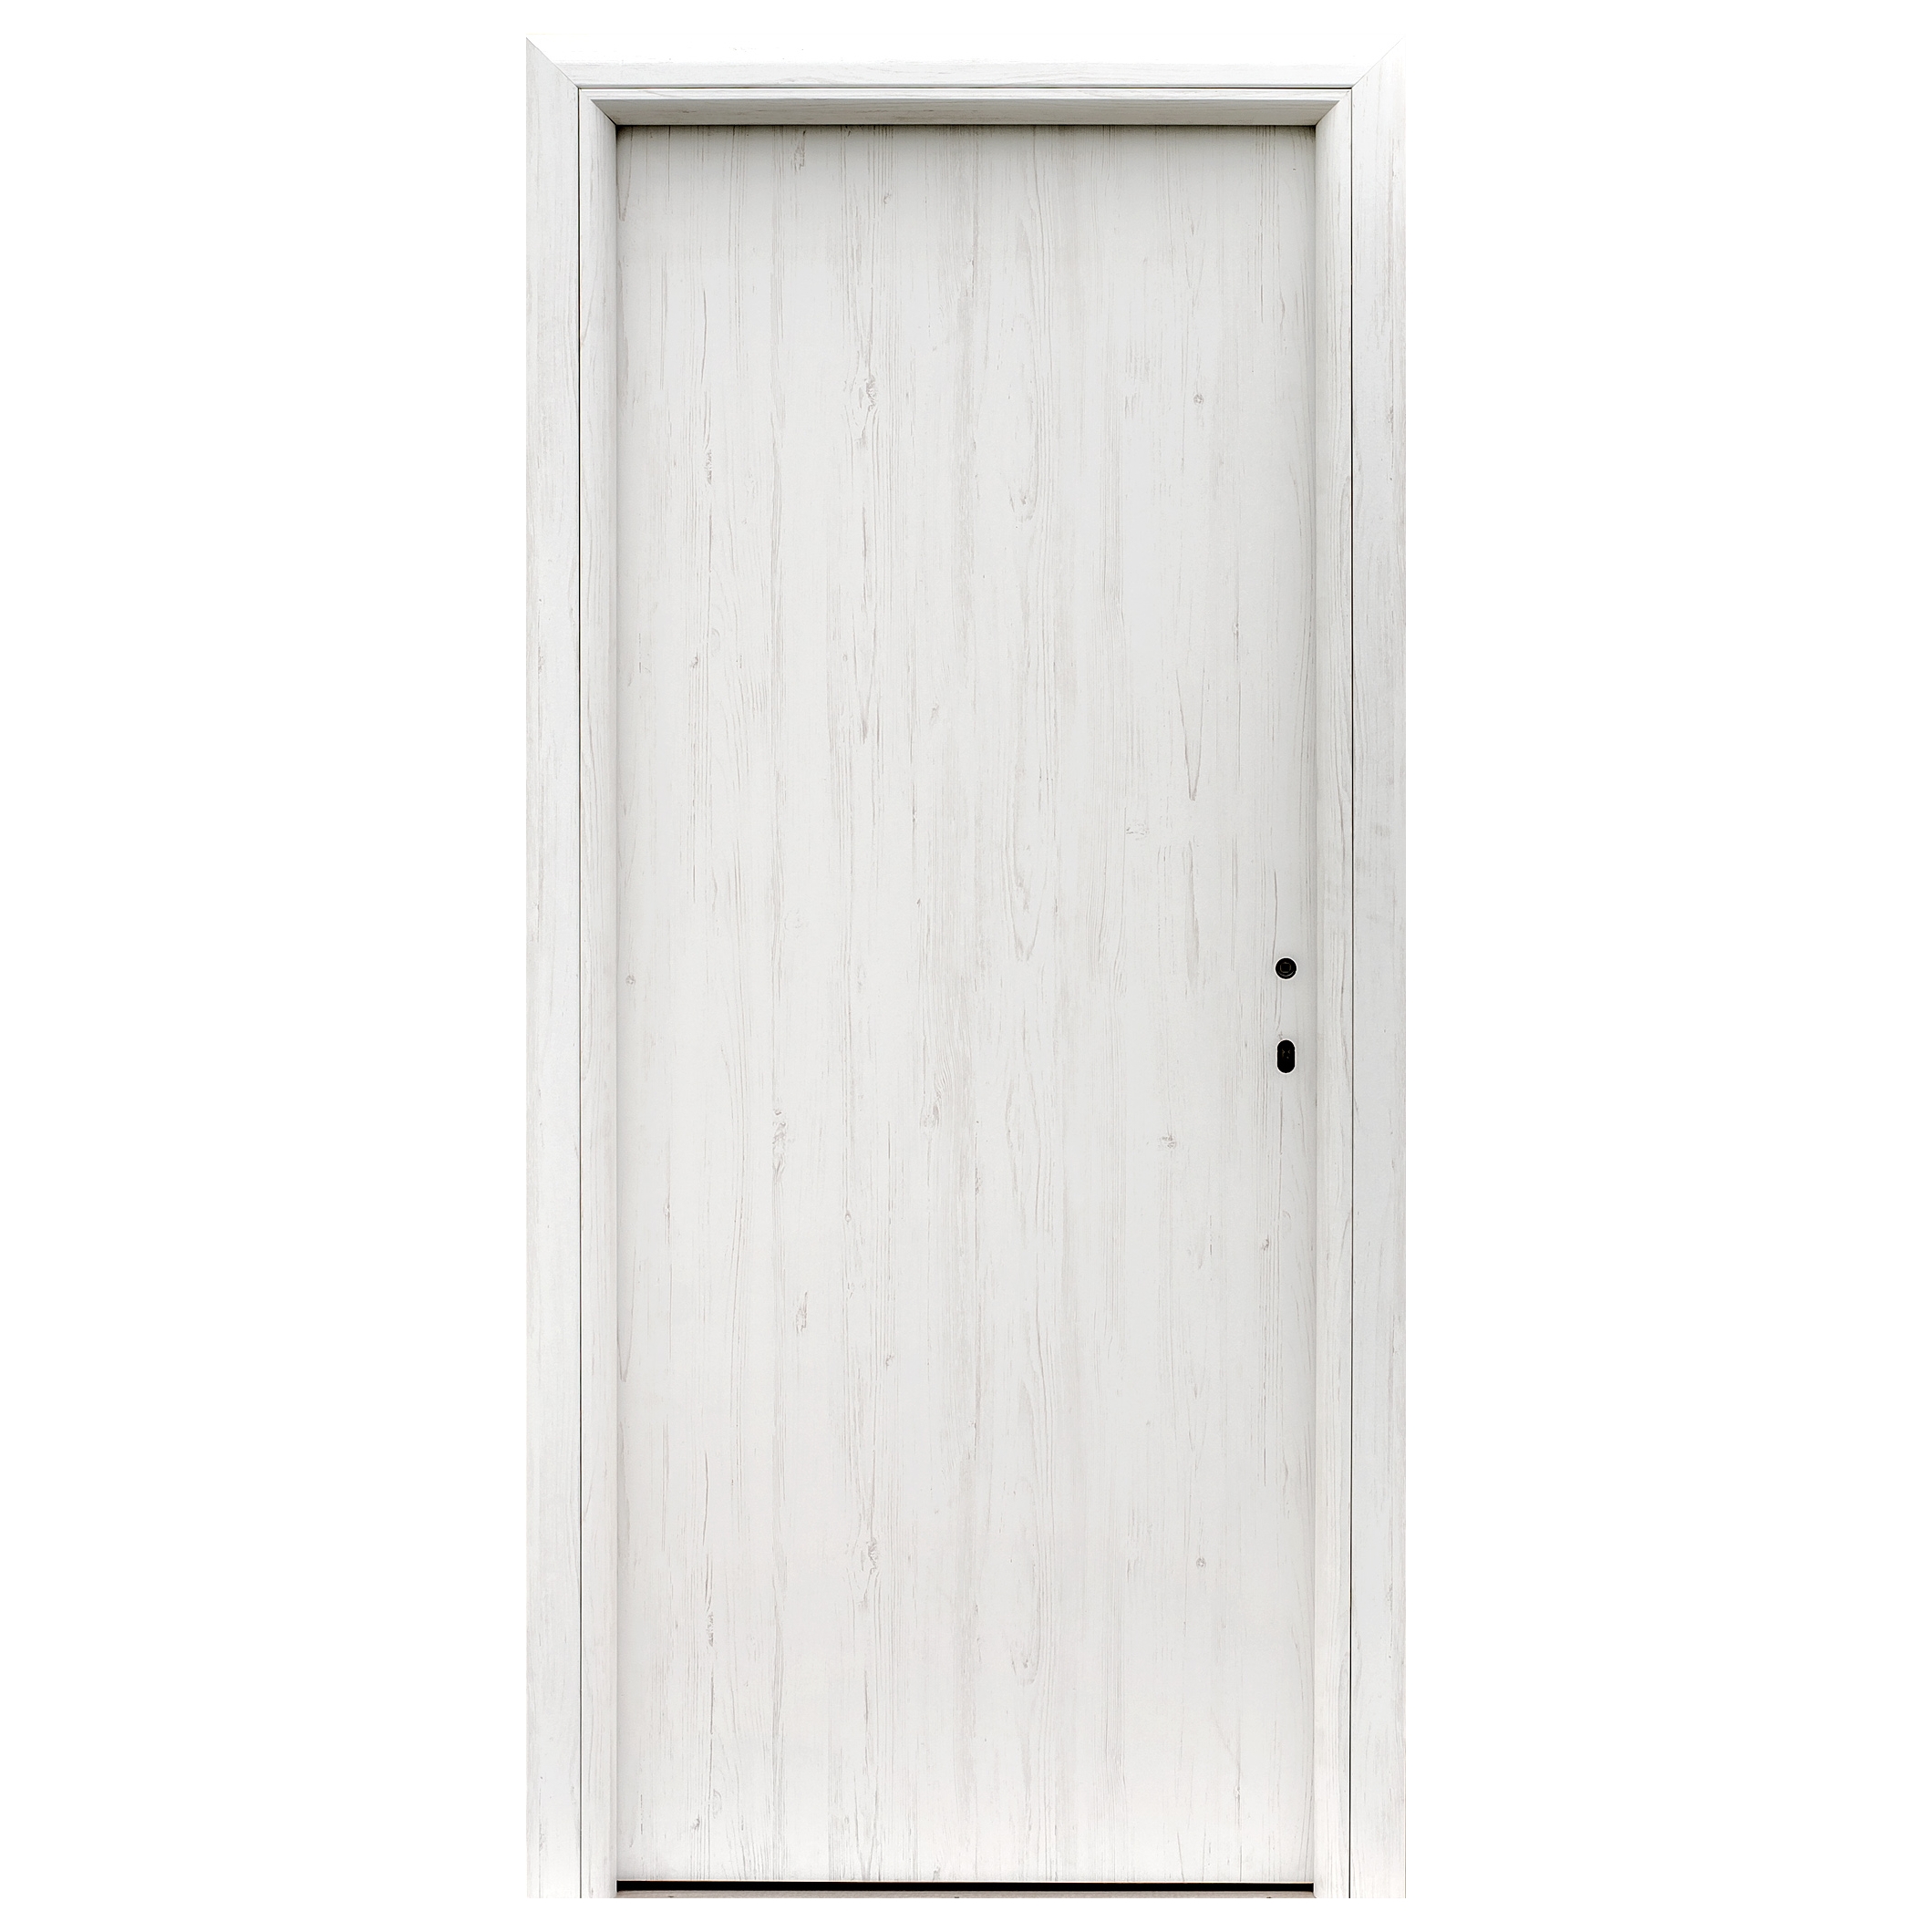 Usa interior celulara, Eco Euro Doors R80 Doina, stanga, alb, 202 x 76 x 4 cm, cu toc